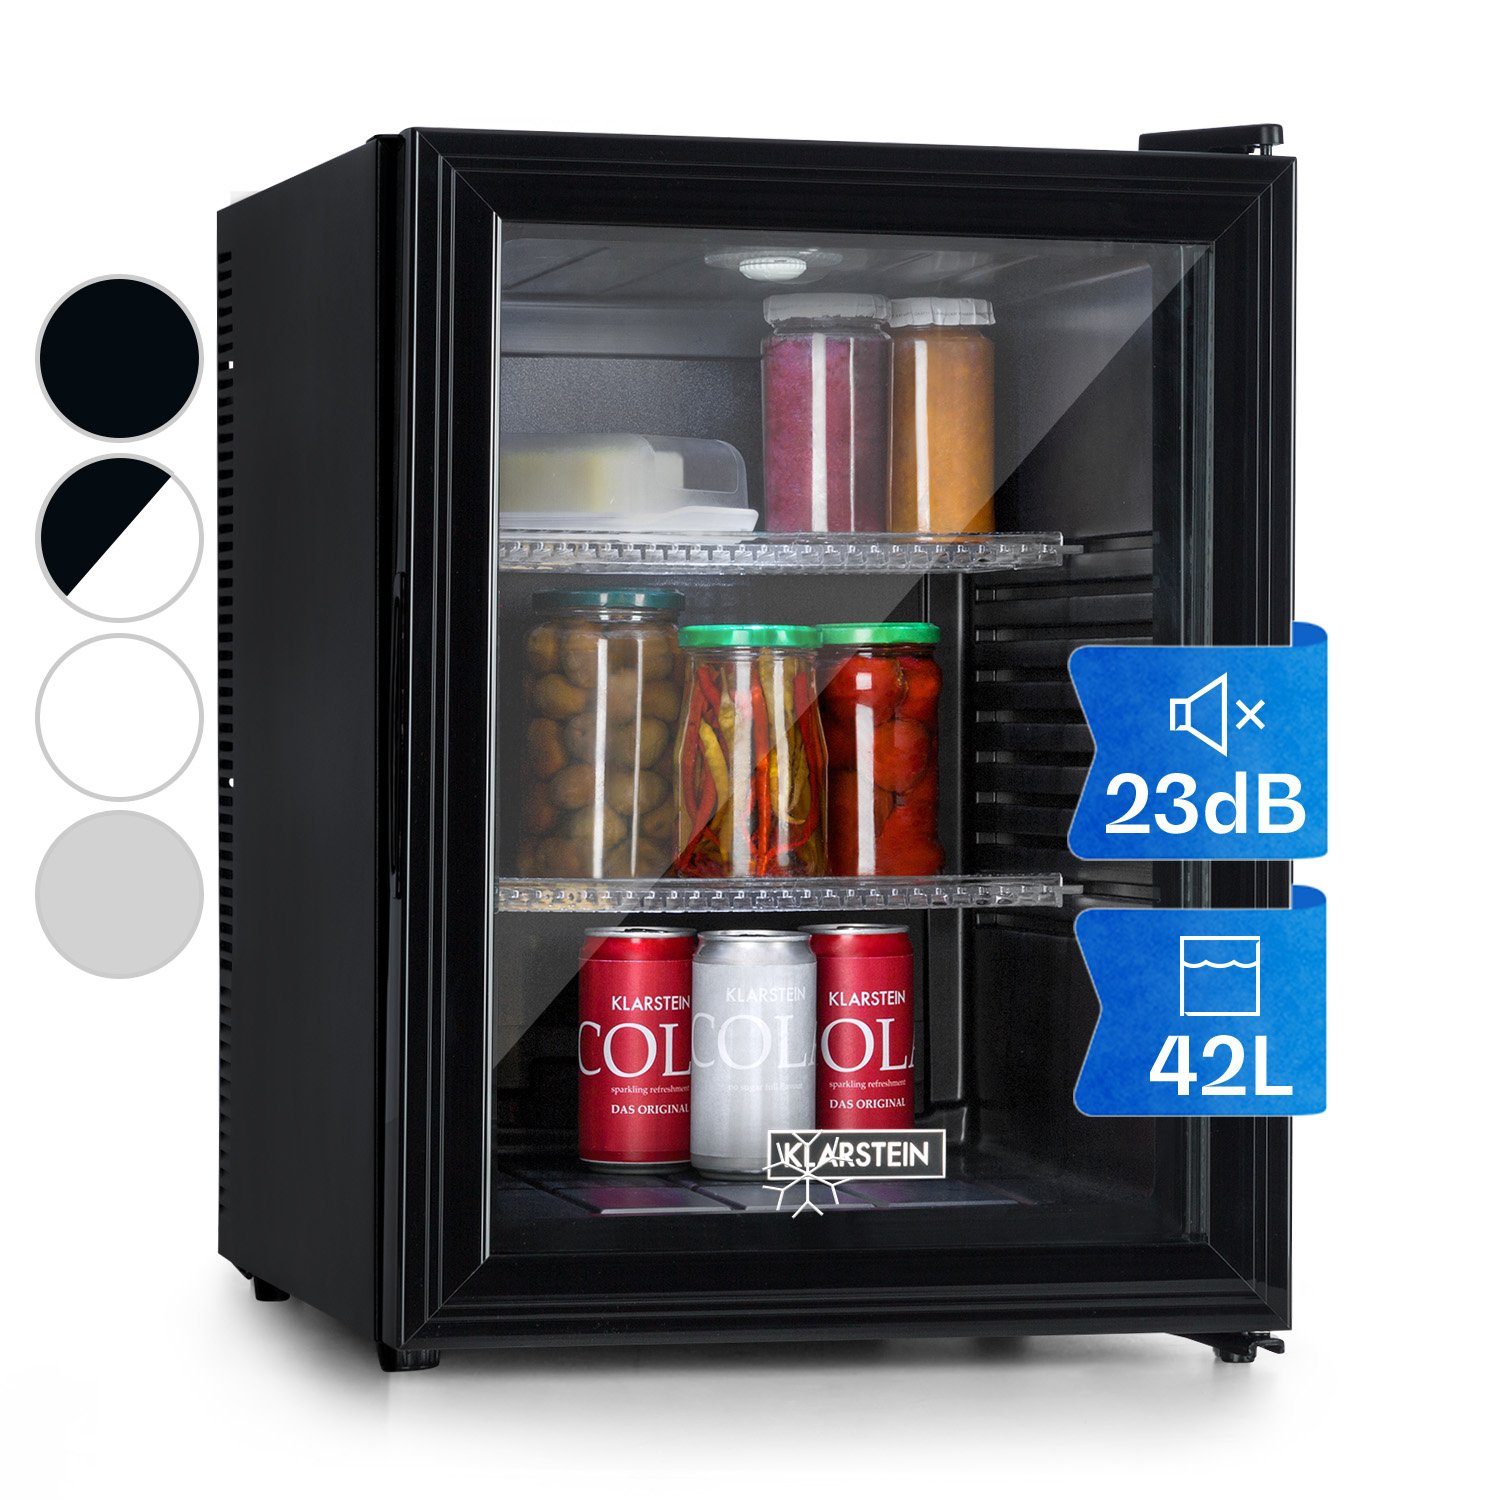 Refrigerateur bar Comfee Refrigerateur bar RCD50WH1(E) - 43L